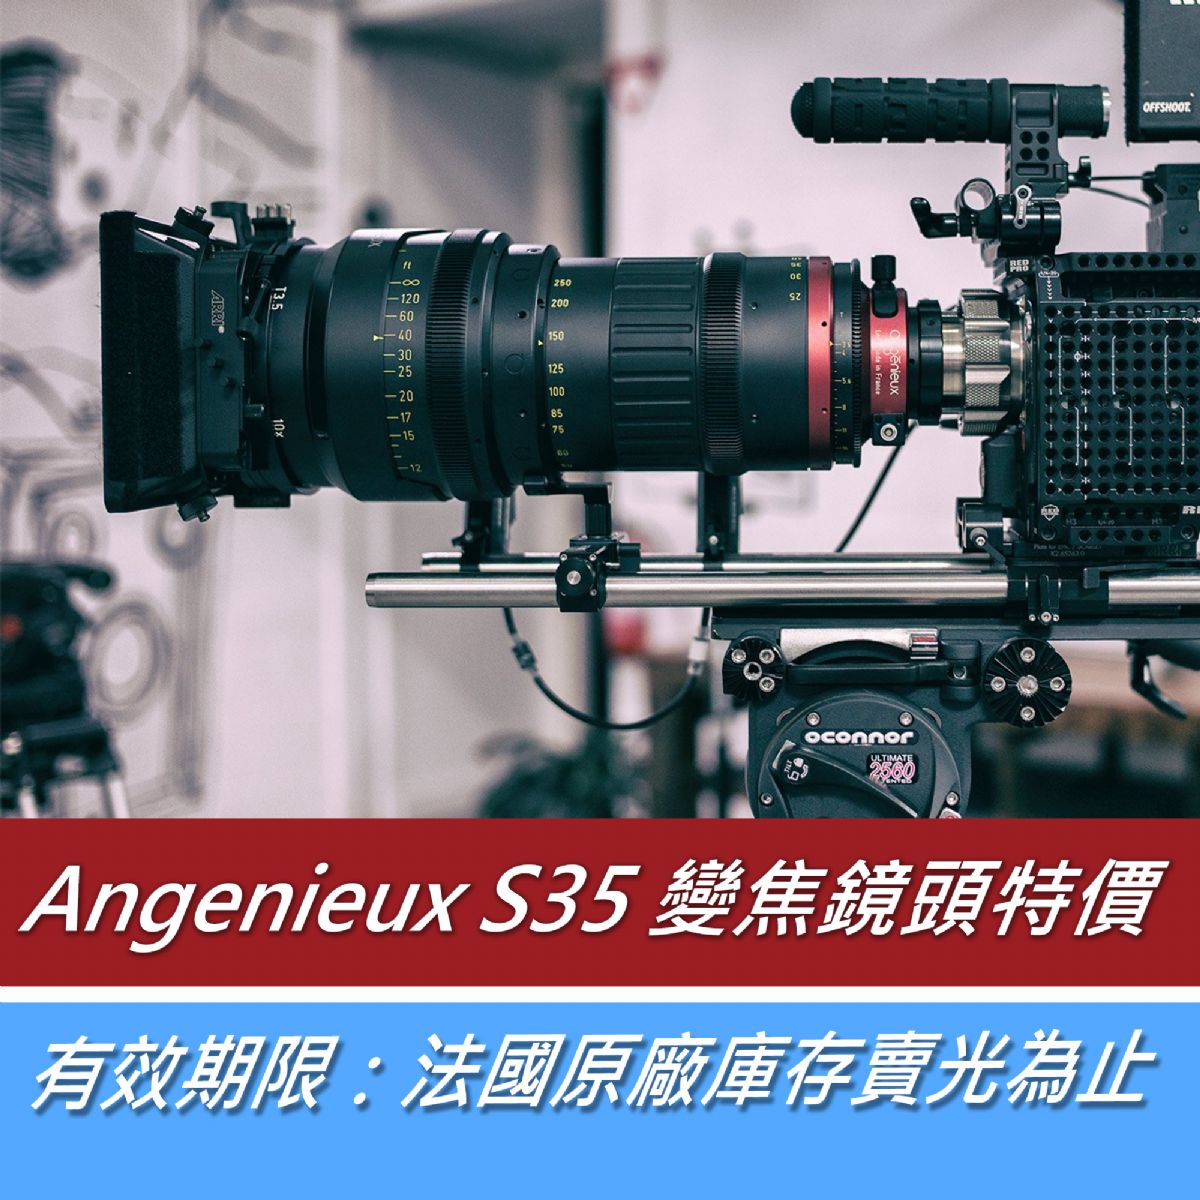 Angenieux S35 變焦鏡頭特價！(有效期限：法國原廠庫存賣光為止)